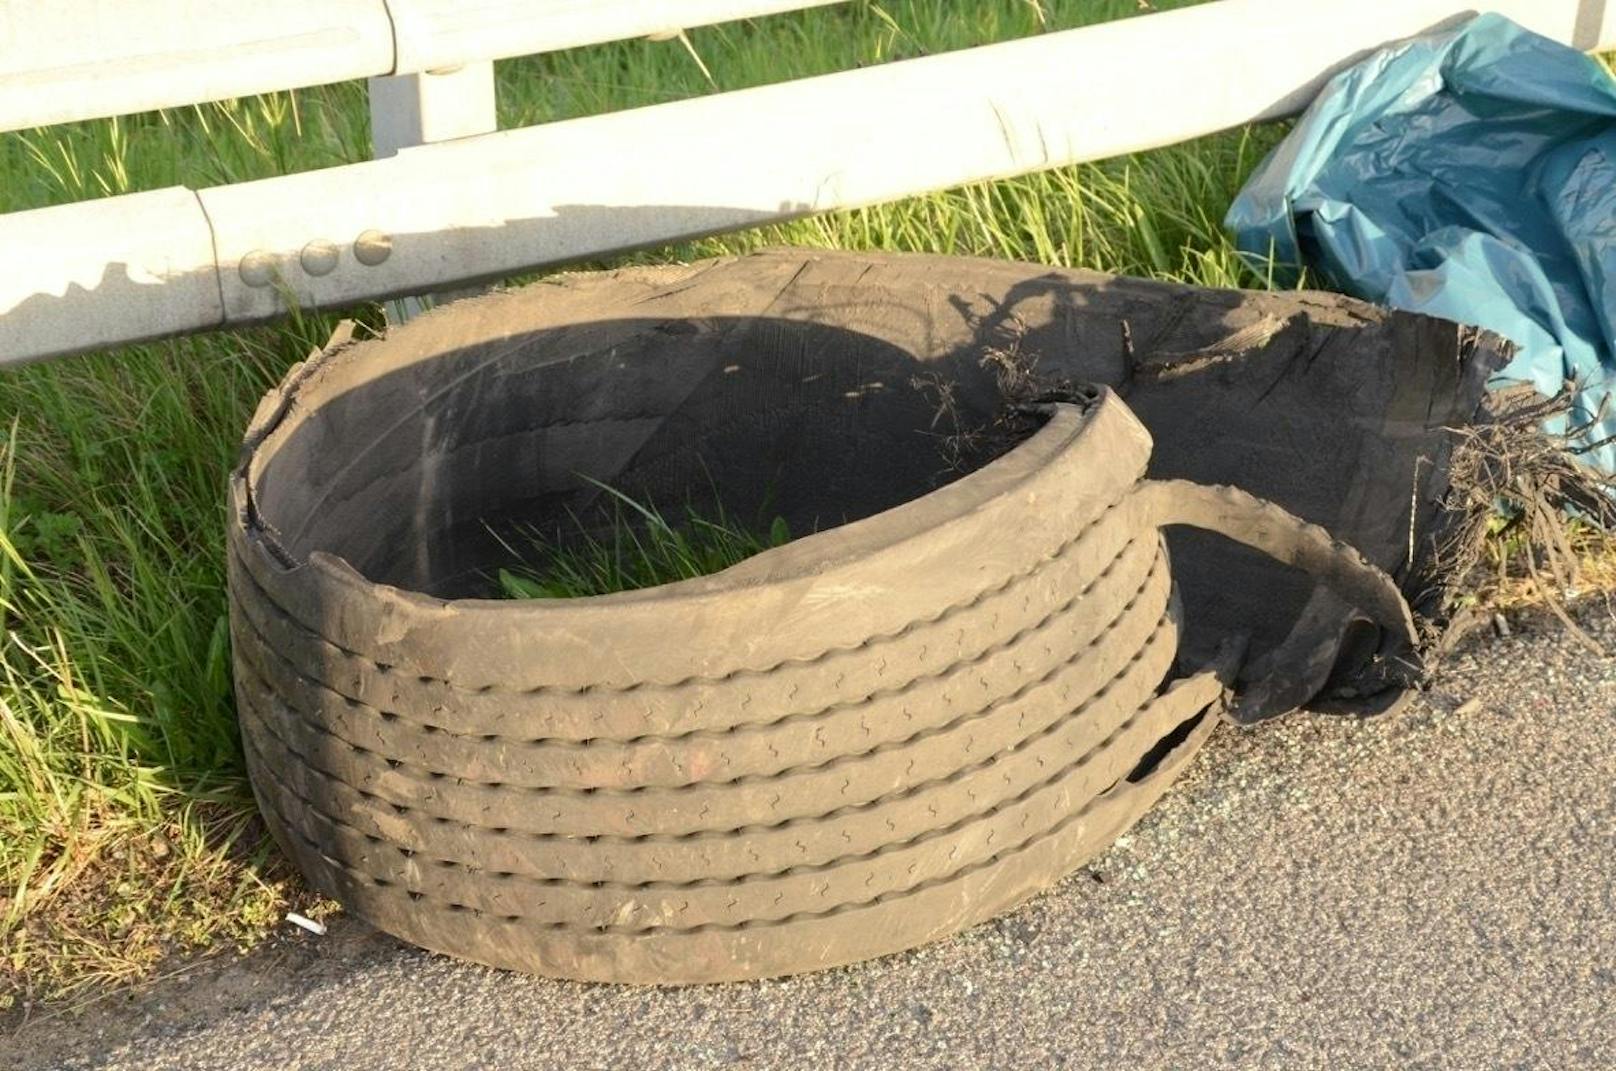 Auslöser des Unfalles: Der kaputte Lkw-Reifen.